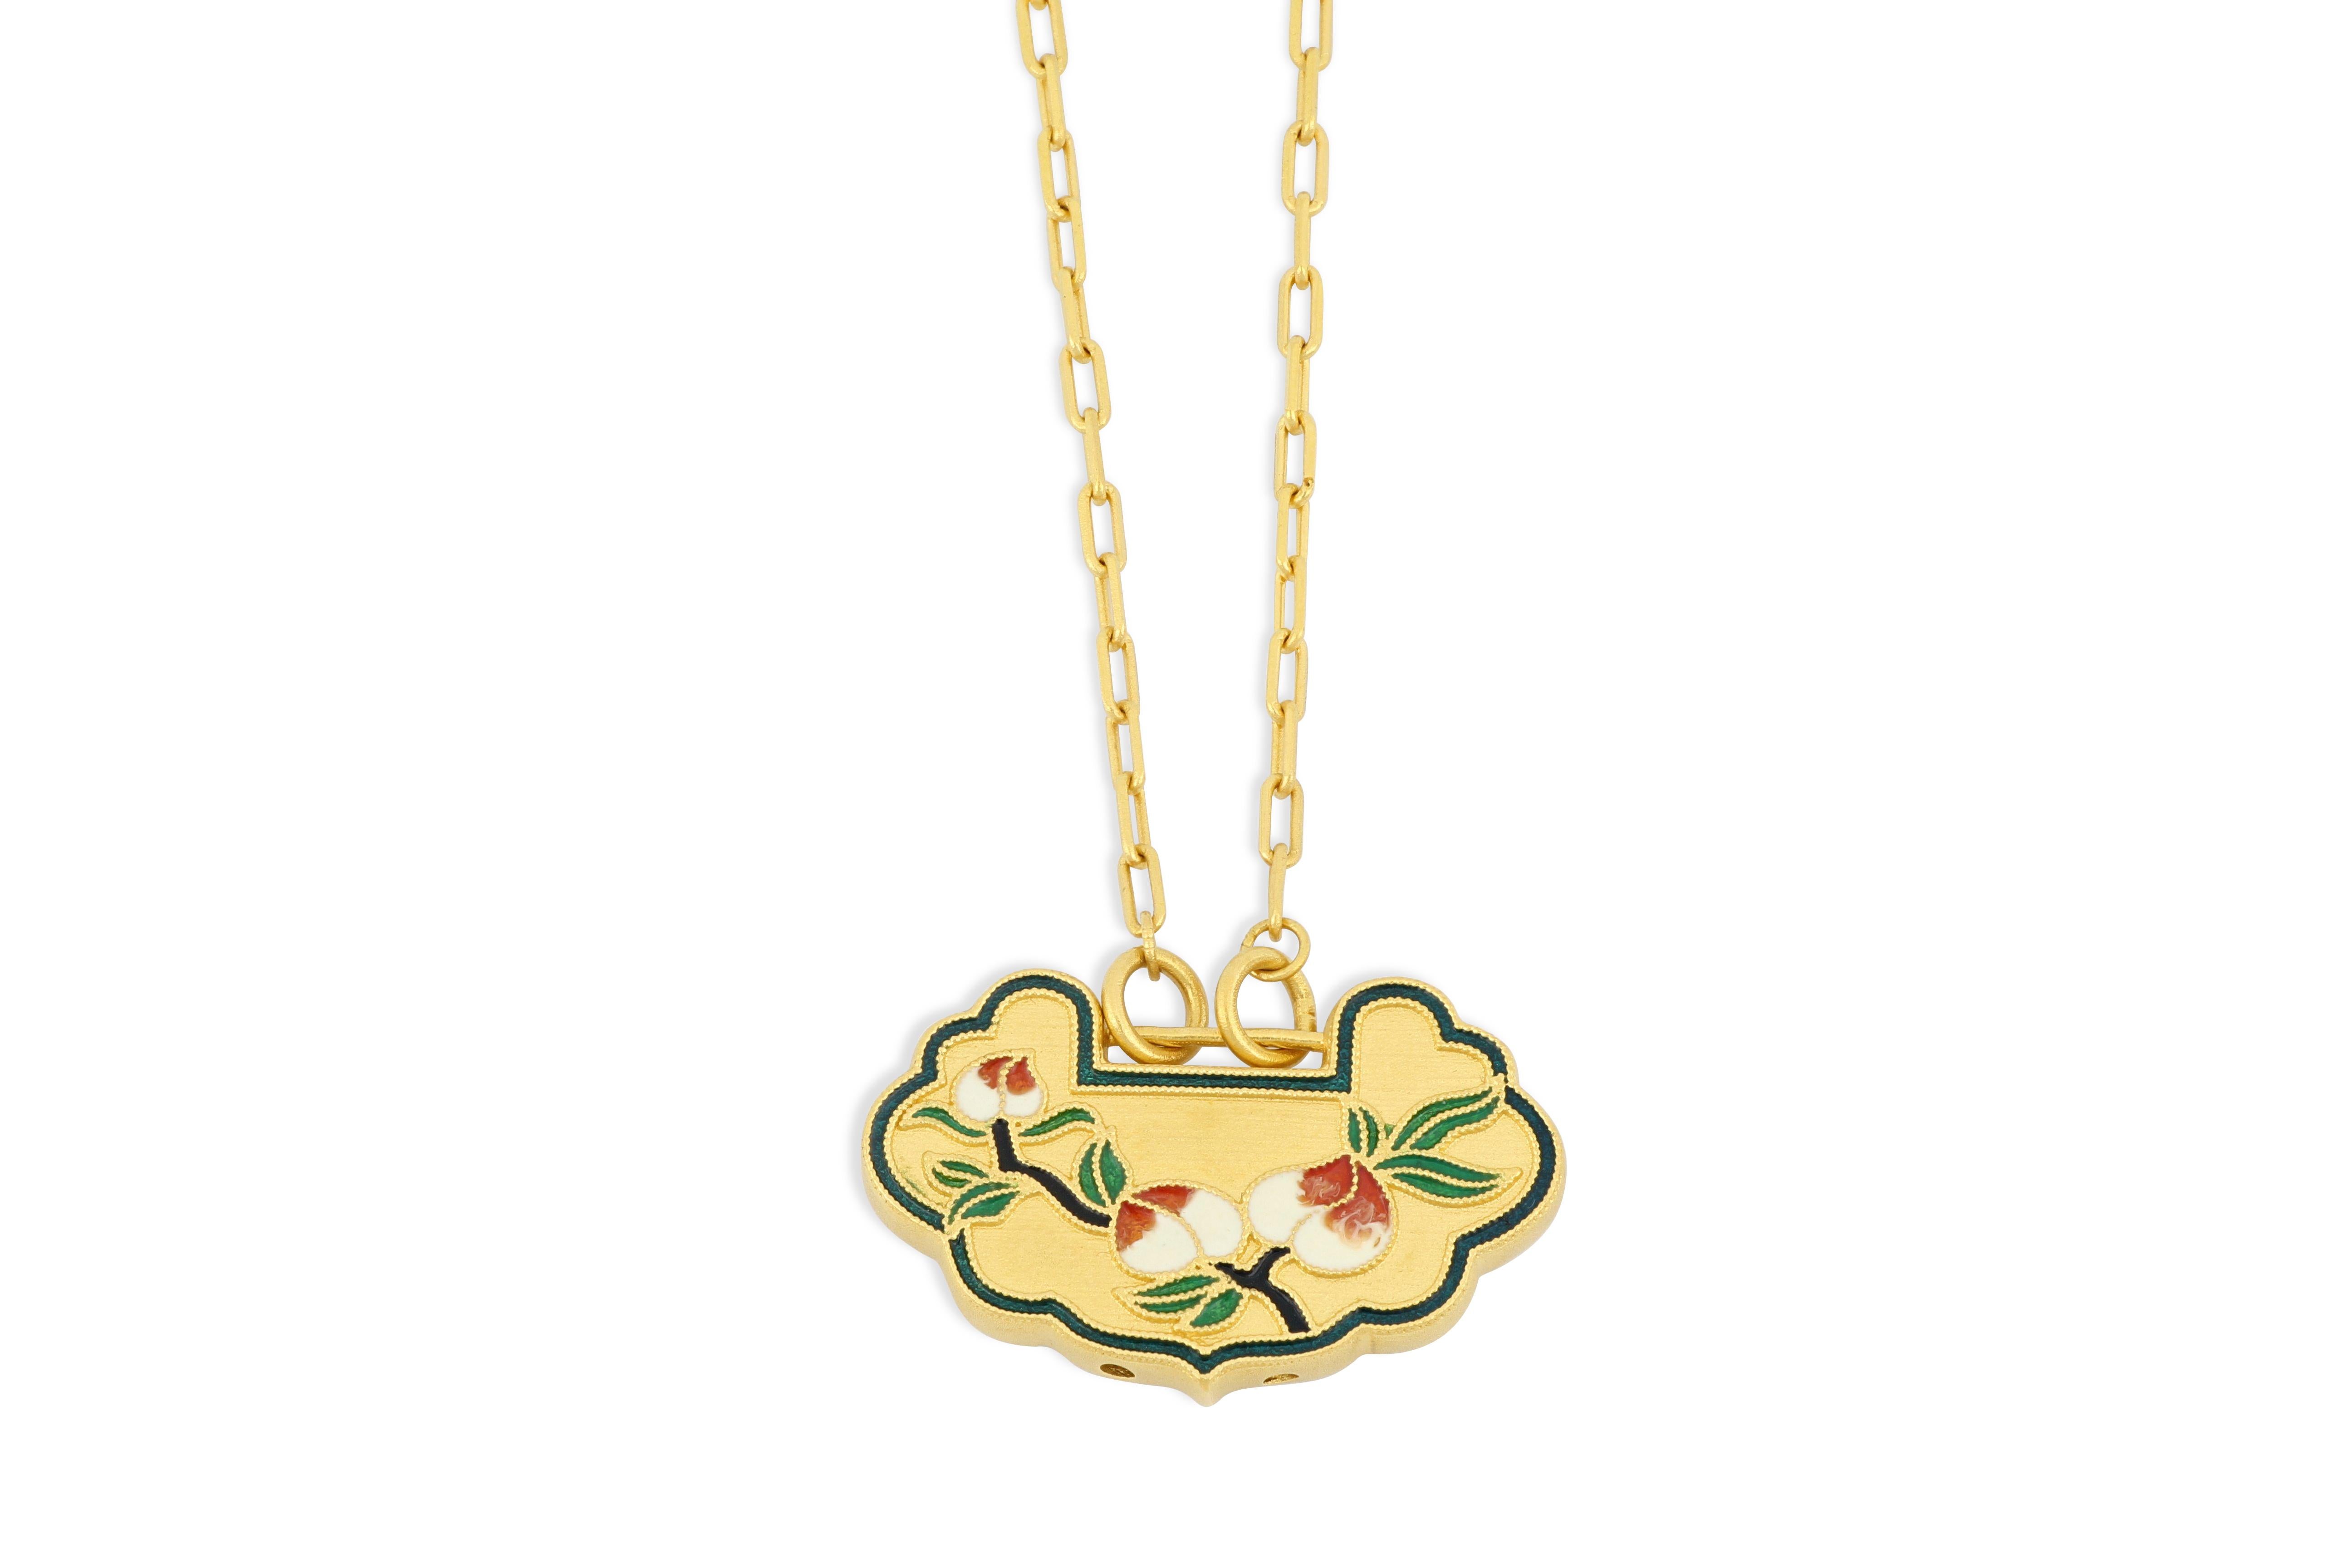 Il s'agit d'un collier pendentif très spécial, en or pur à 99,9 %, pesant environ 18 g, avec un motif floral décoratif coloré de thème chinois. La forme du pendentif est celle du 